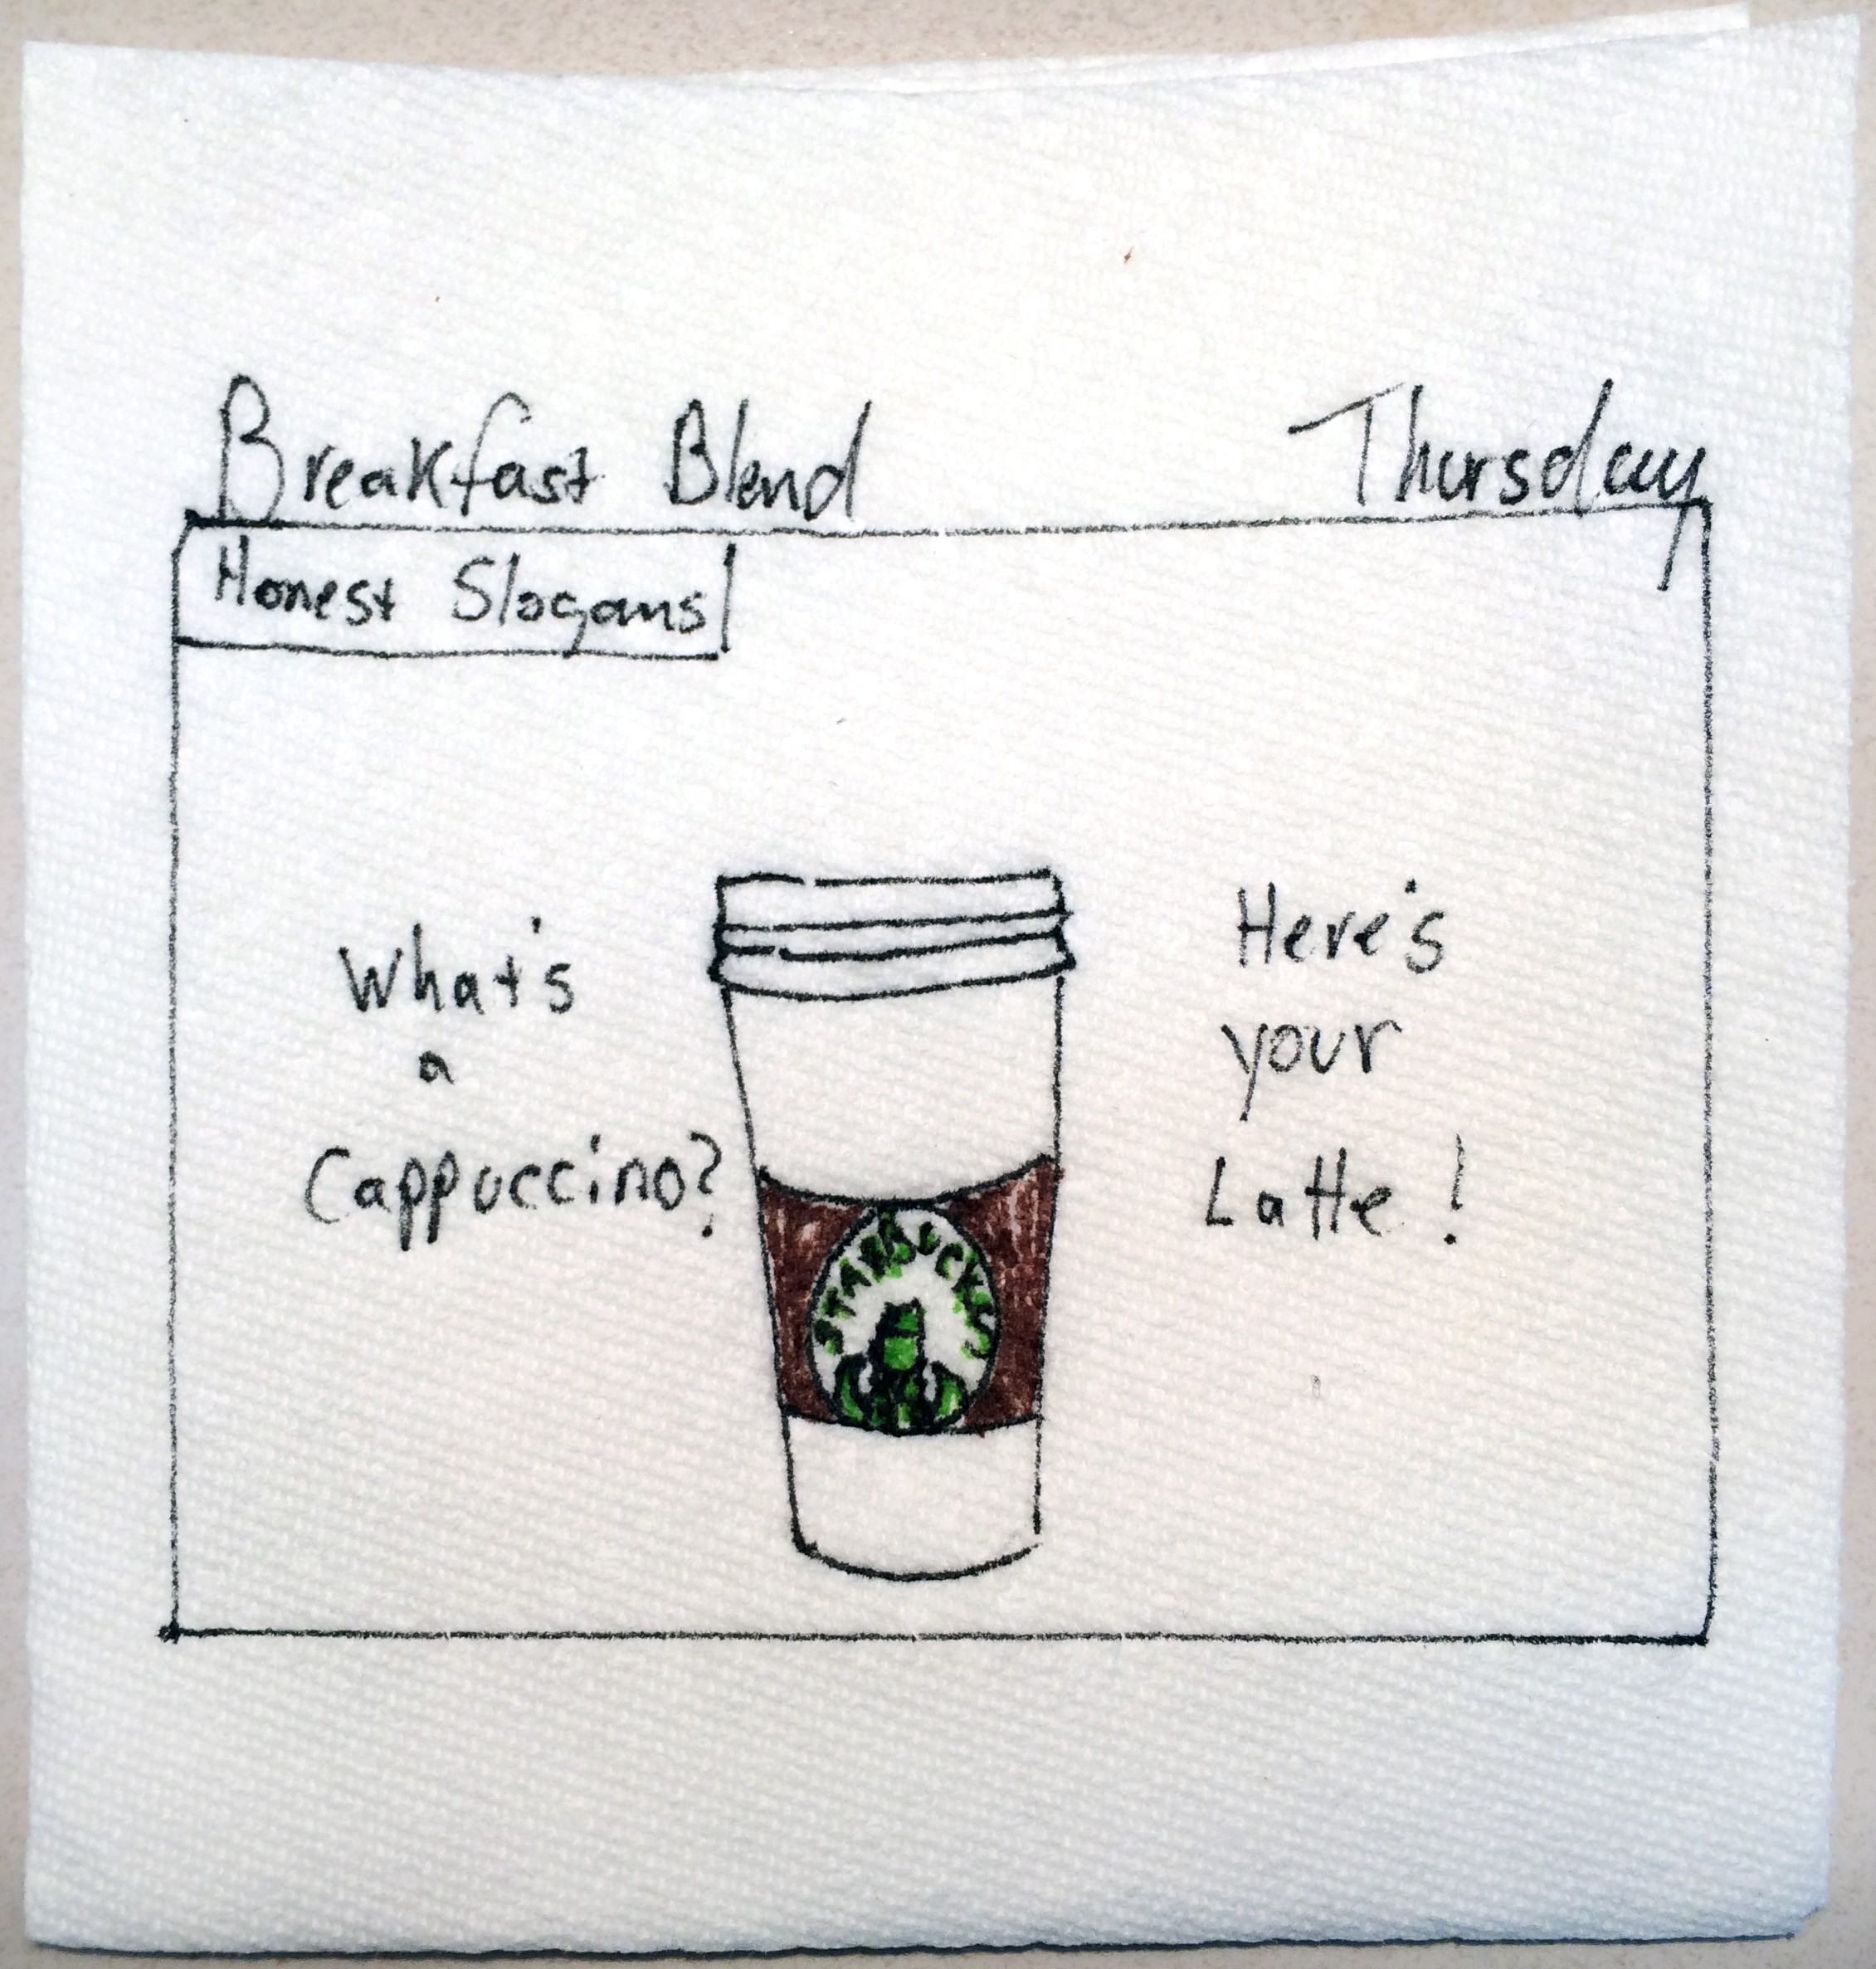 Honest Slogans: Starbucks